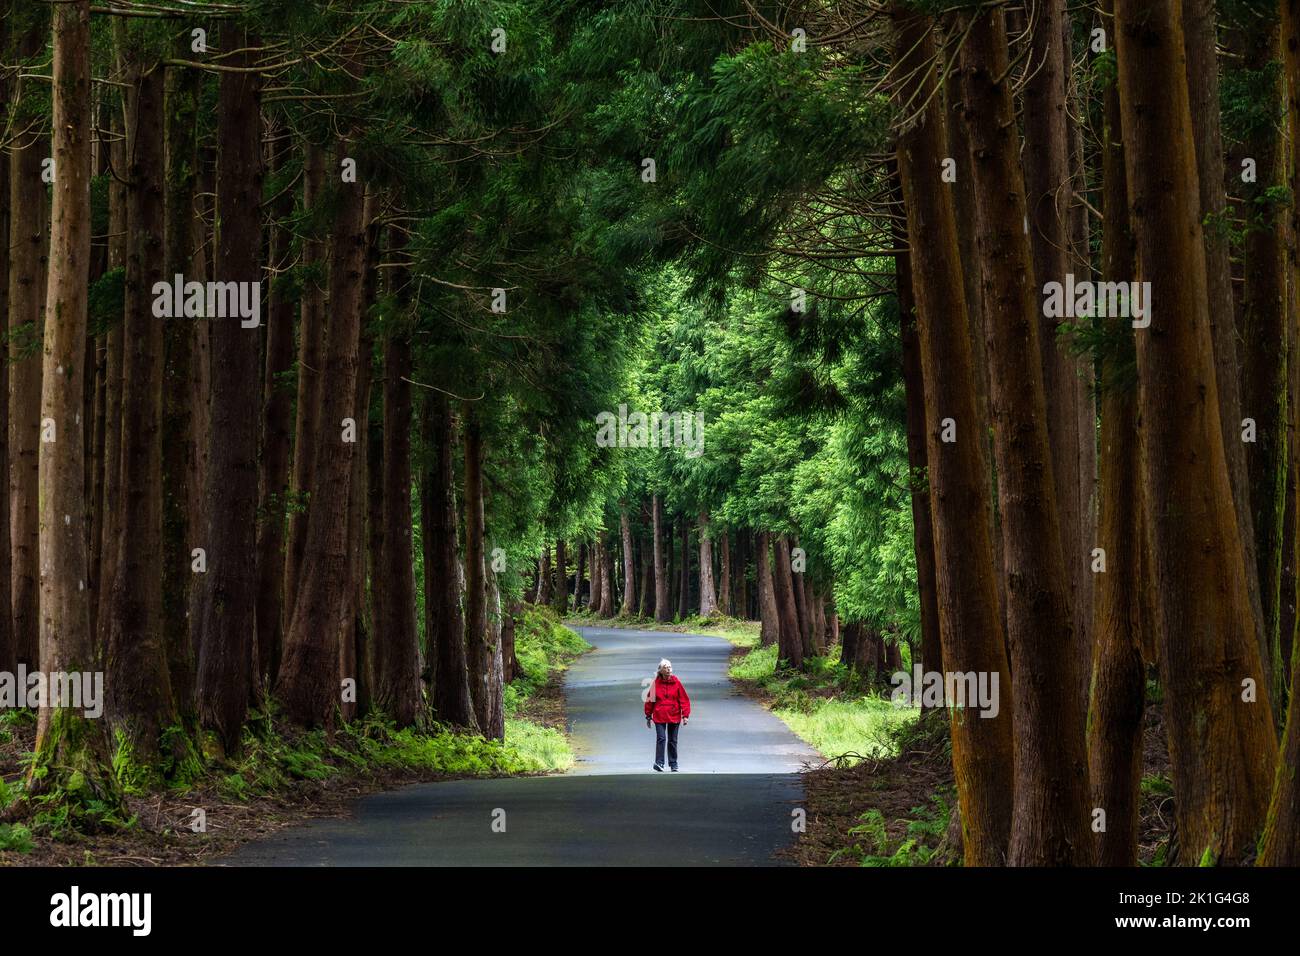 Una mujer camina junto a gigantescos cedros japoneses en el parque natural Reserva Florestal parcial da Serra de S. Barbara e dos Misterios Negros en la isla de Terceira, Azores, Portugal. Más del 22 por ciento de la tierra en la isla de Terceira está reservada como reservas naturales. Foto de stock